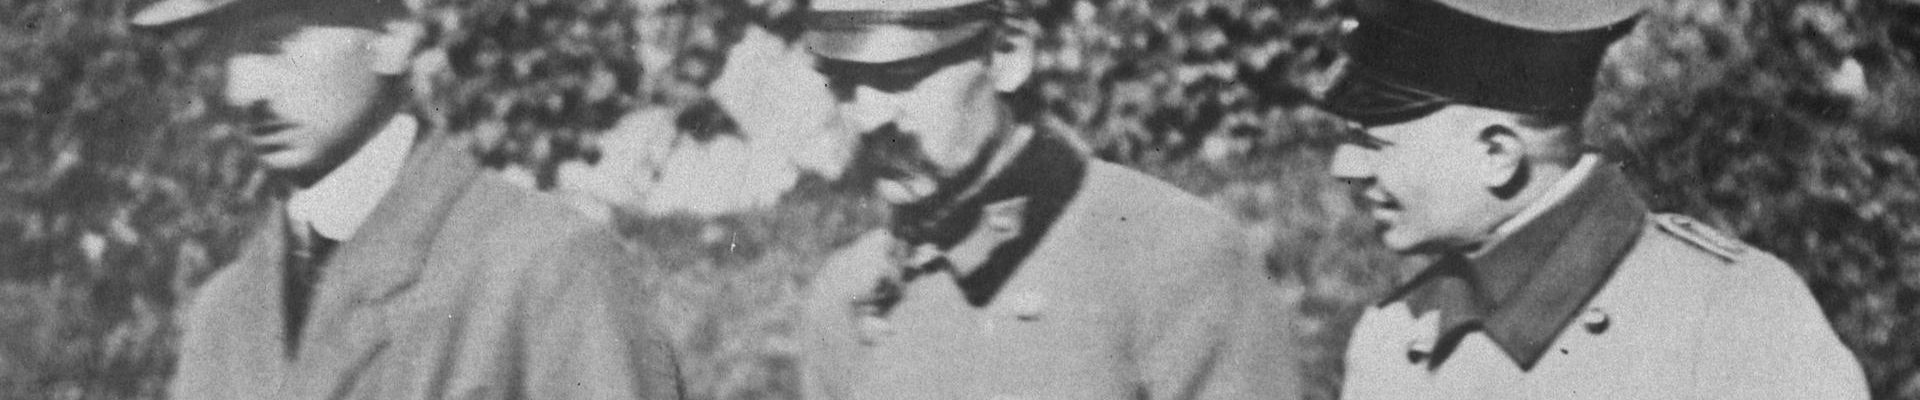 Józef Piłsudski na zdjęciu wykonanym w czasie jego internowania (domena publiczna)